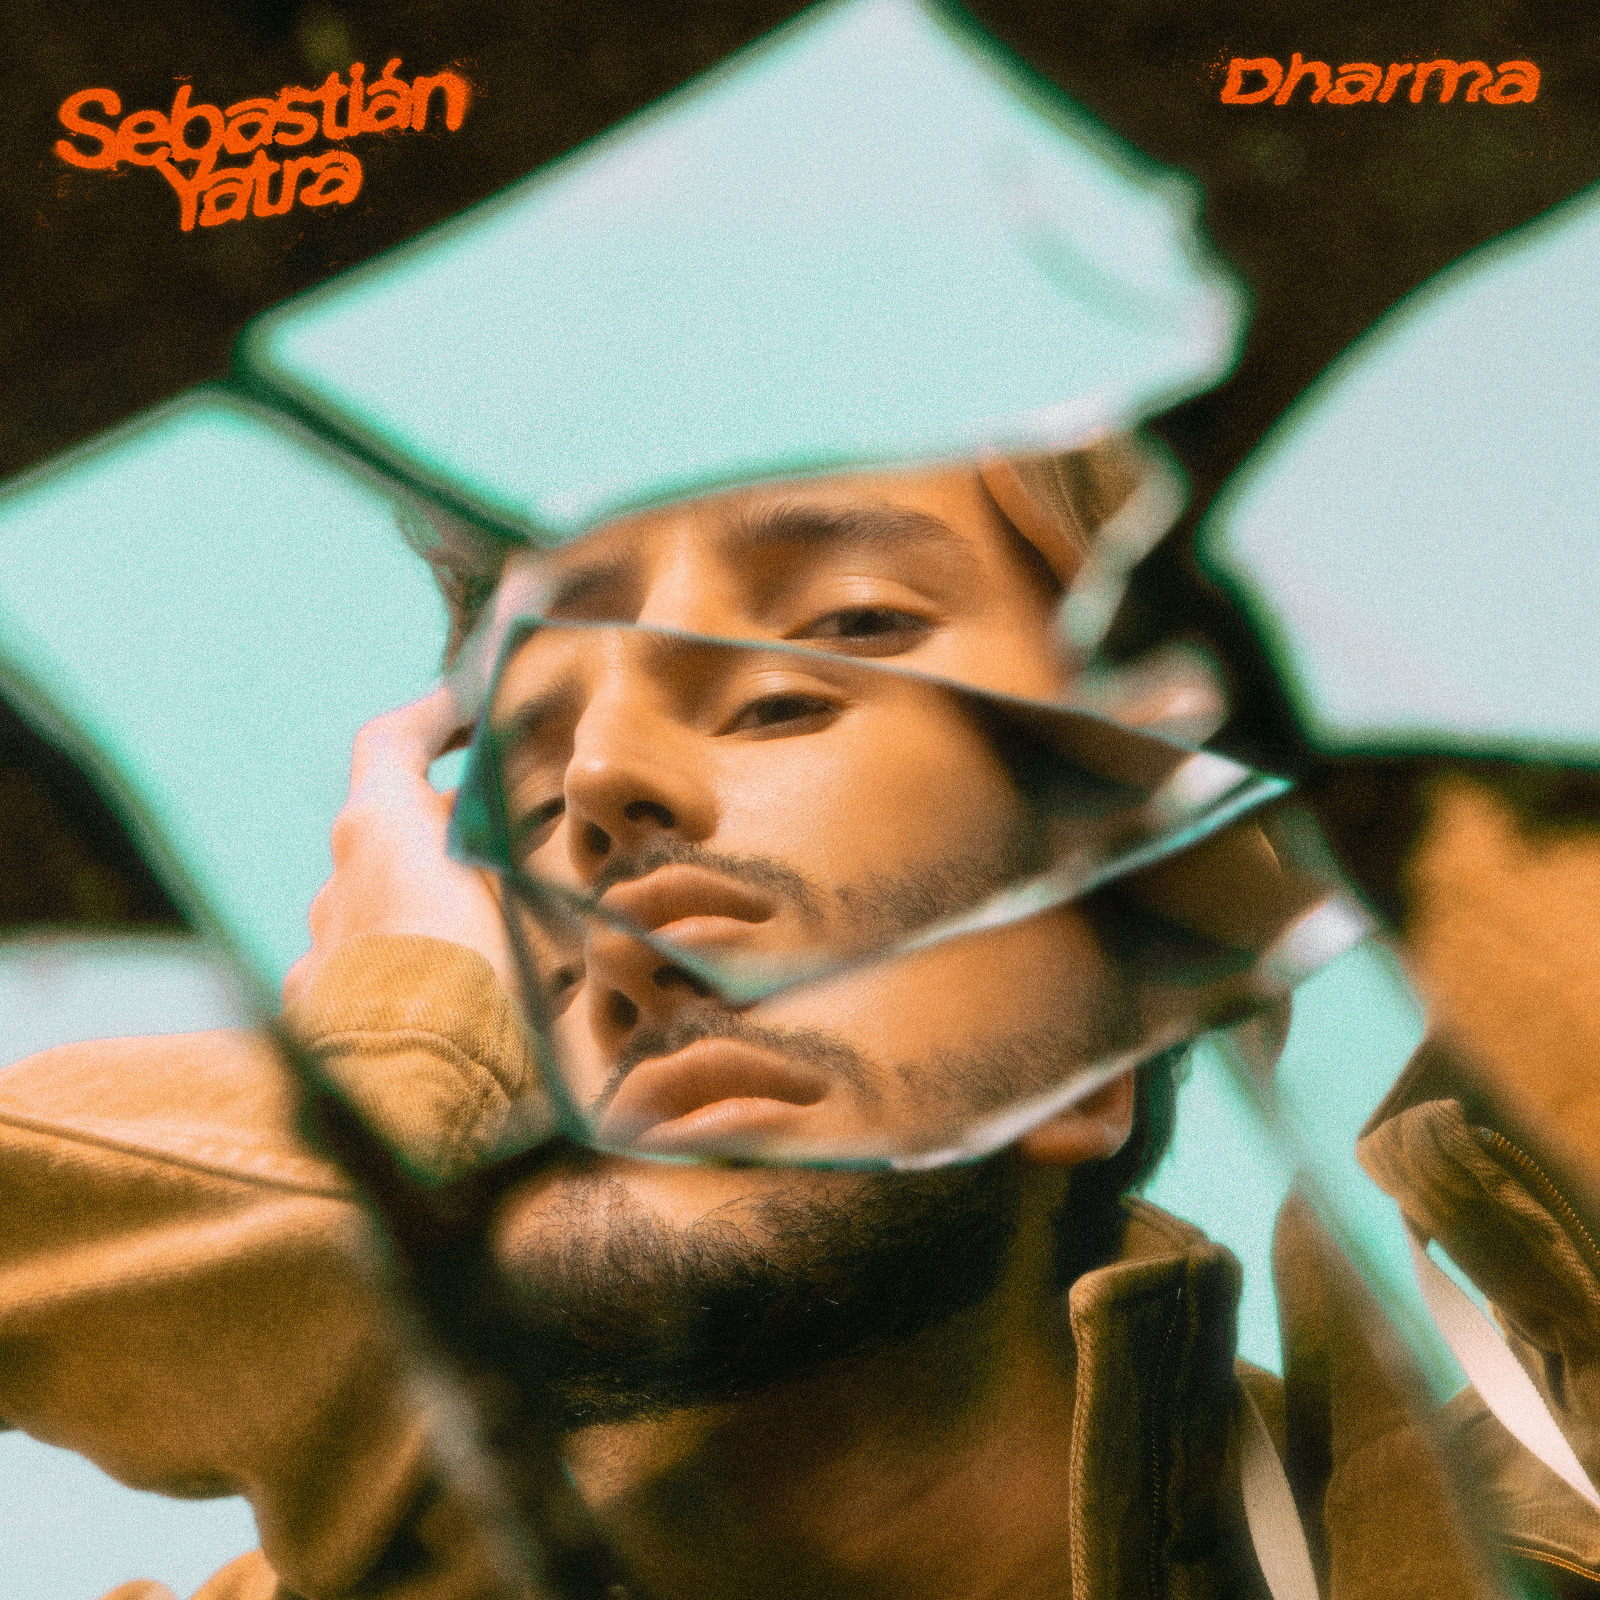 La portada del nuevo álbum, Dharma, de Sebastián Yatra